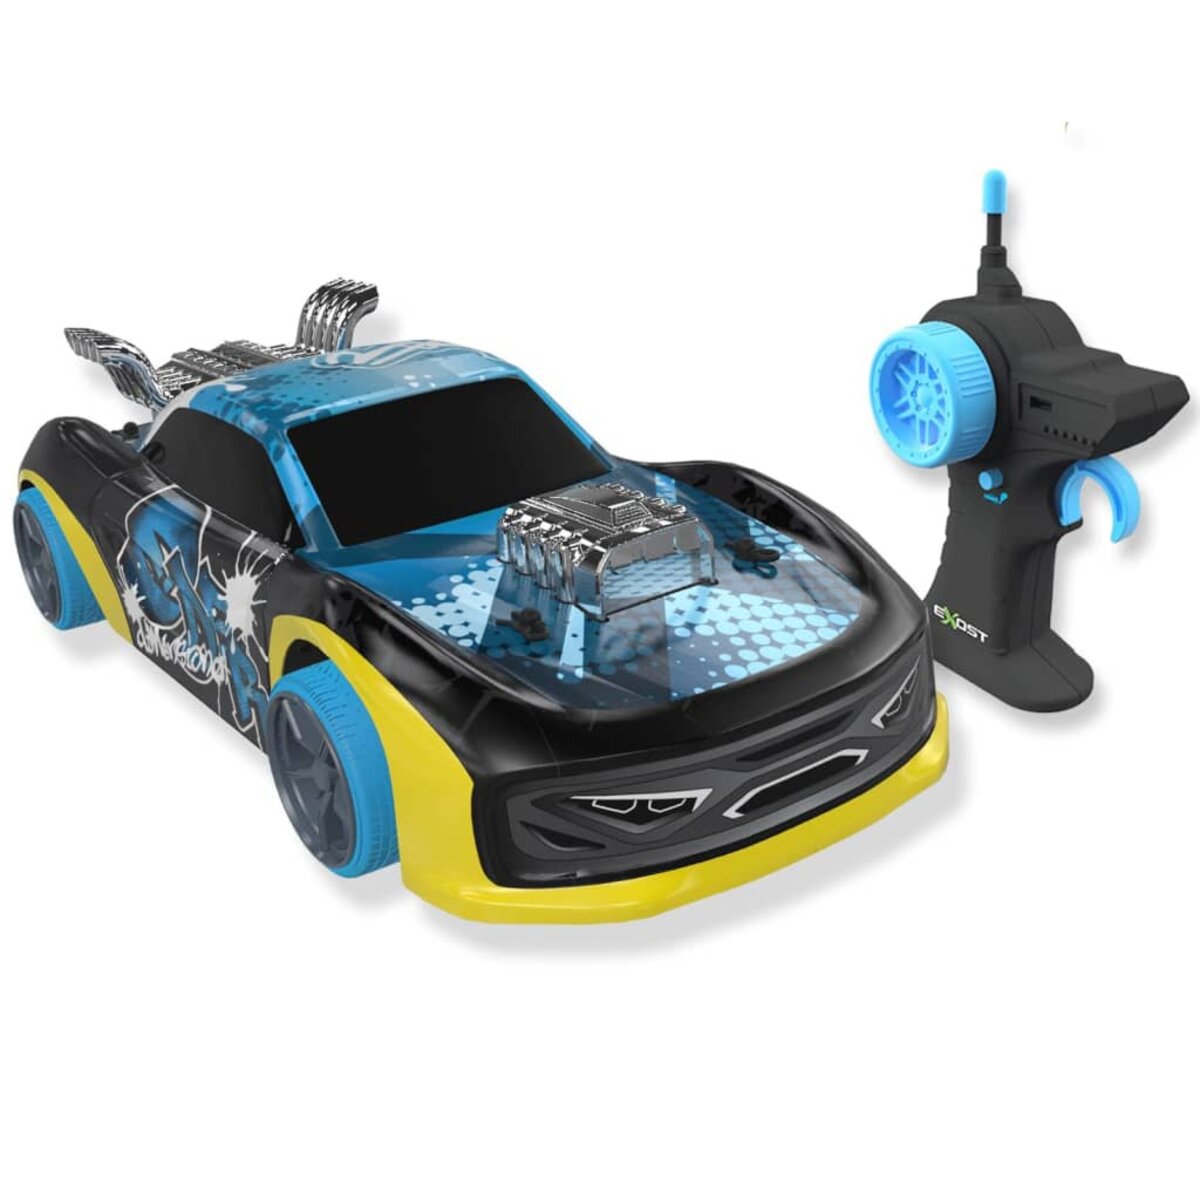 bleu-Voiture jouet anti collision télécommandée pour garçons, modèle sans  fil, dérive de simulation, haute vi